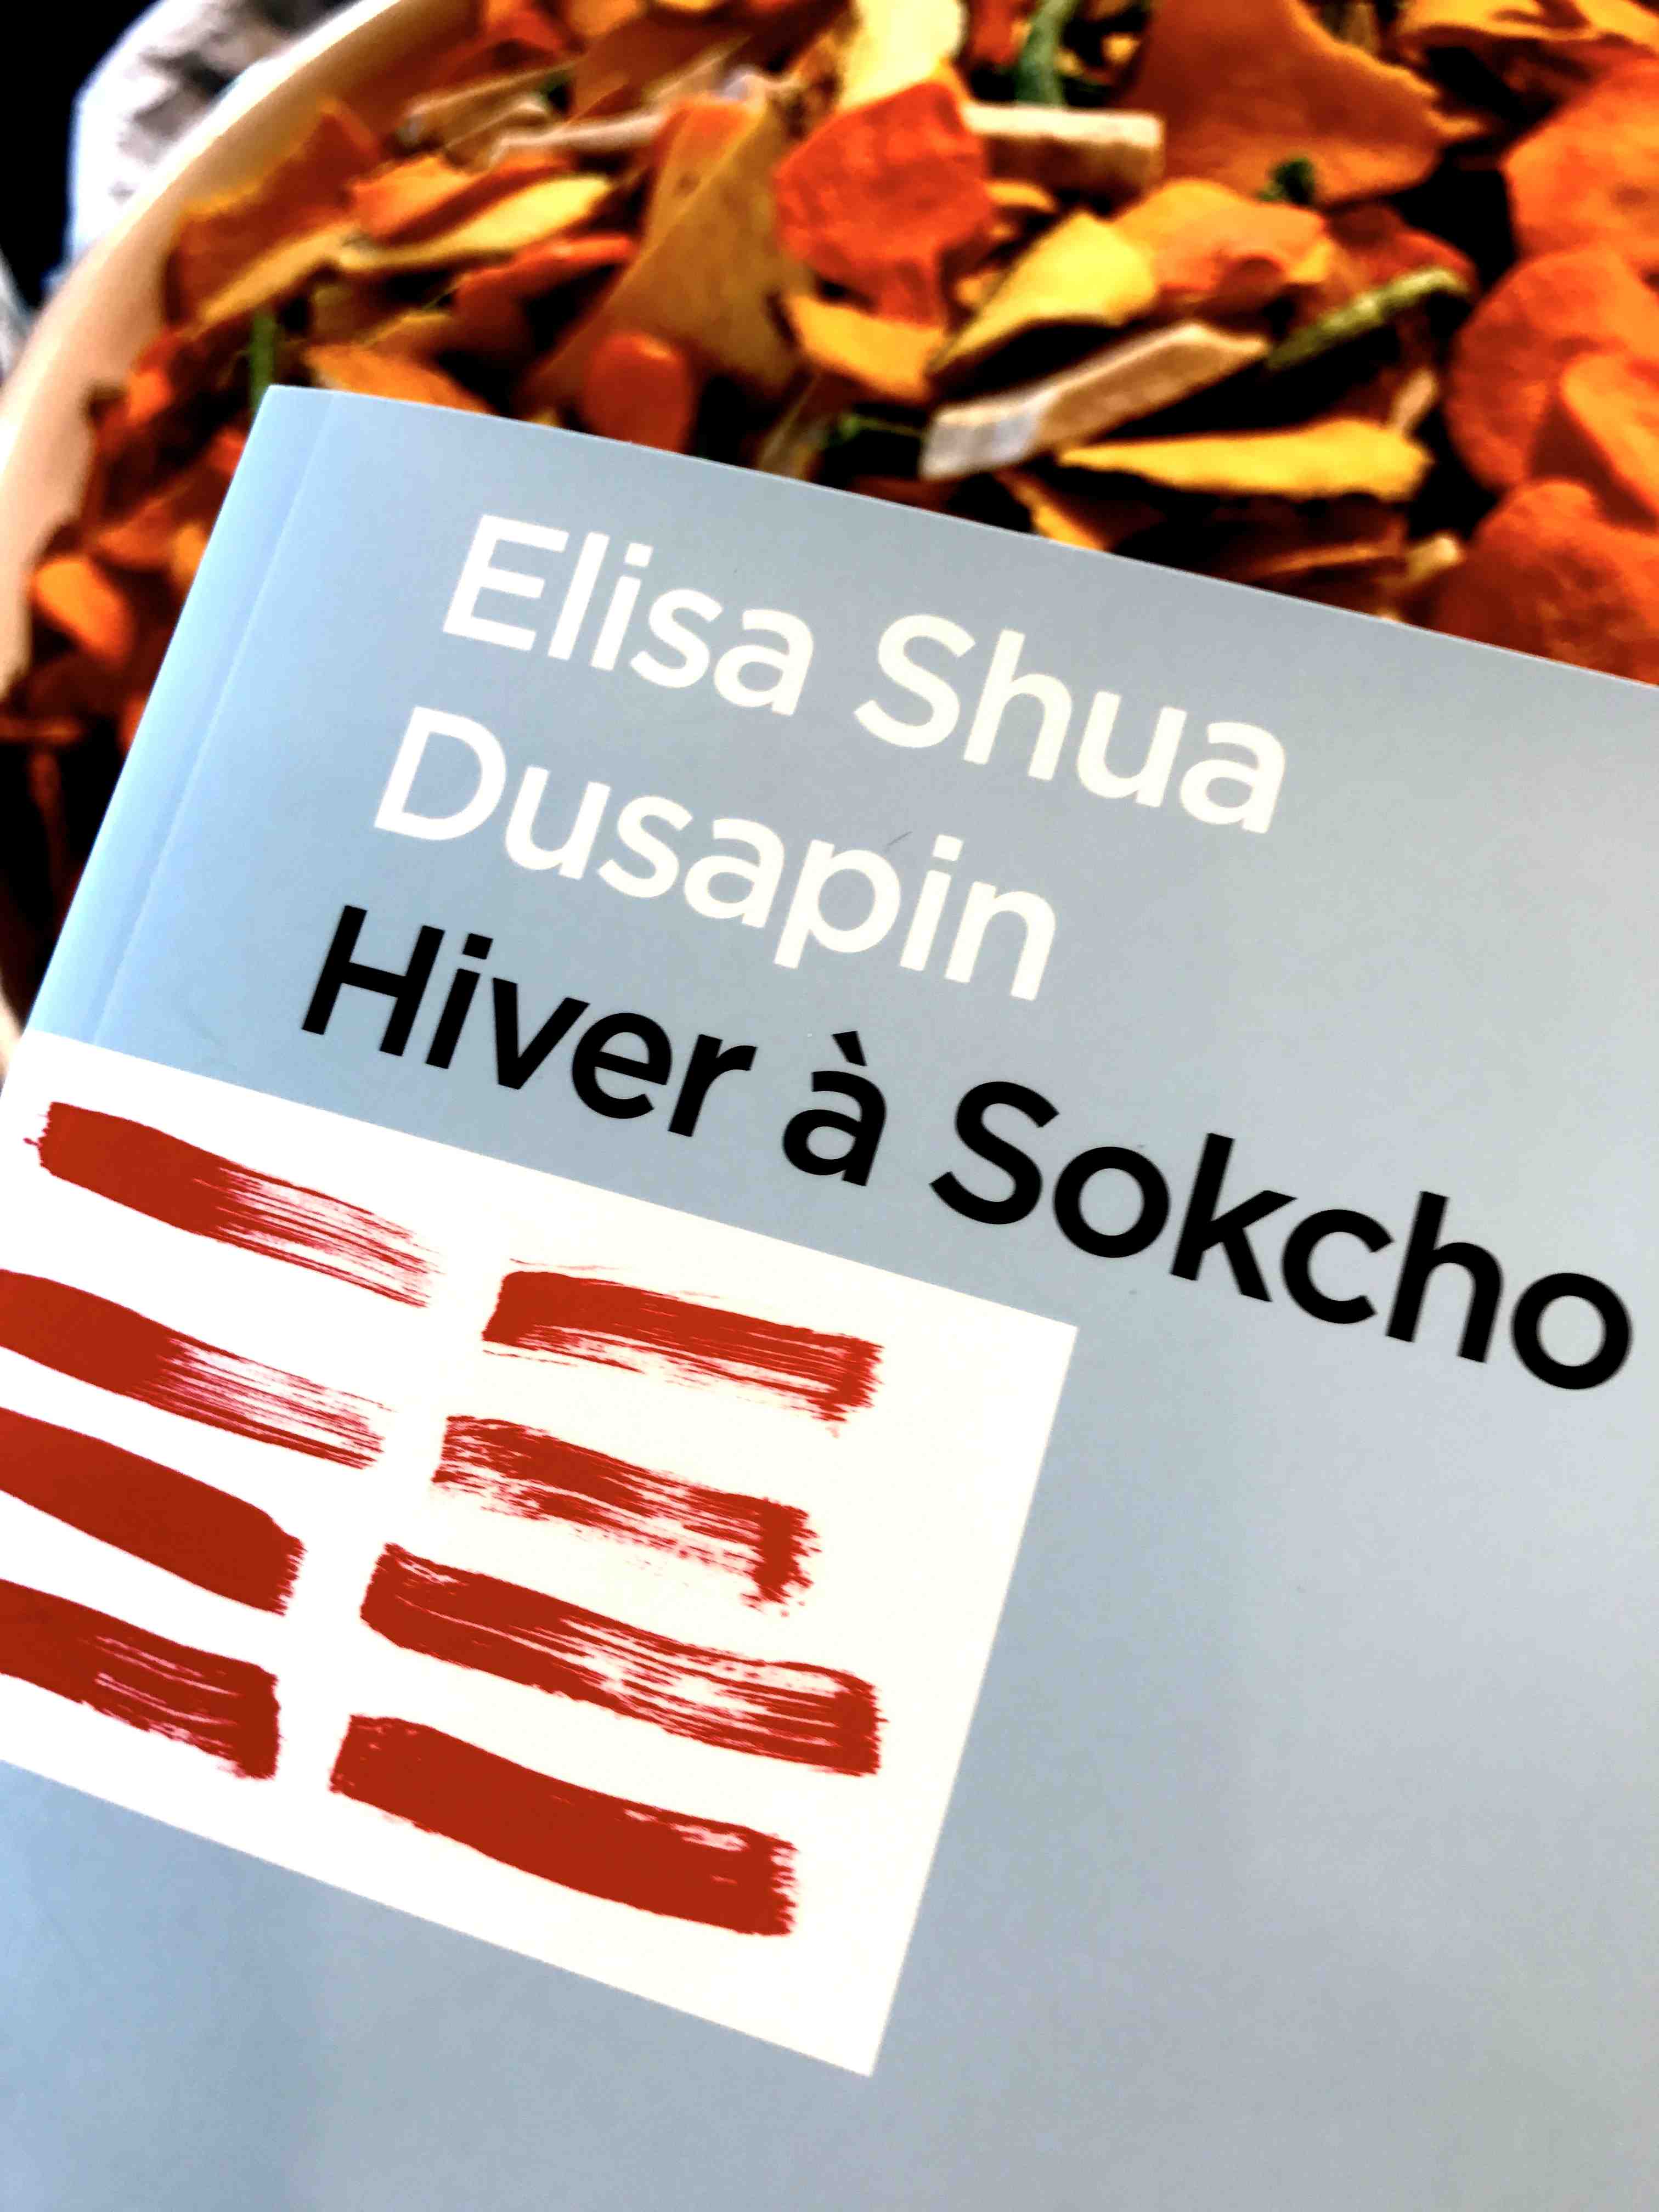 Elisa Shua Dusapin